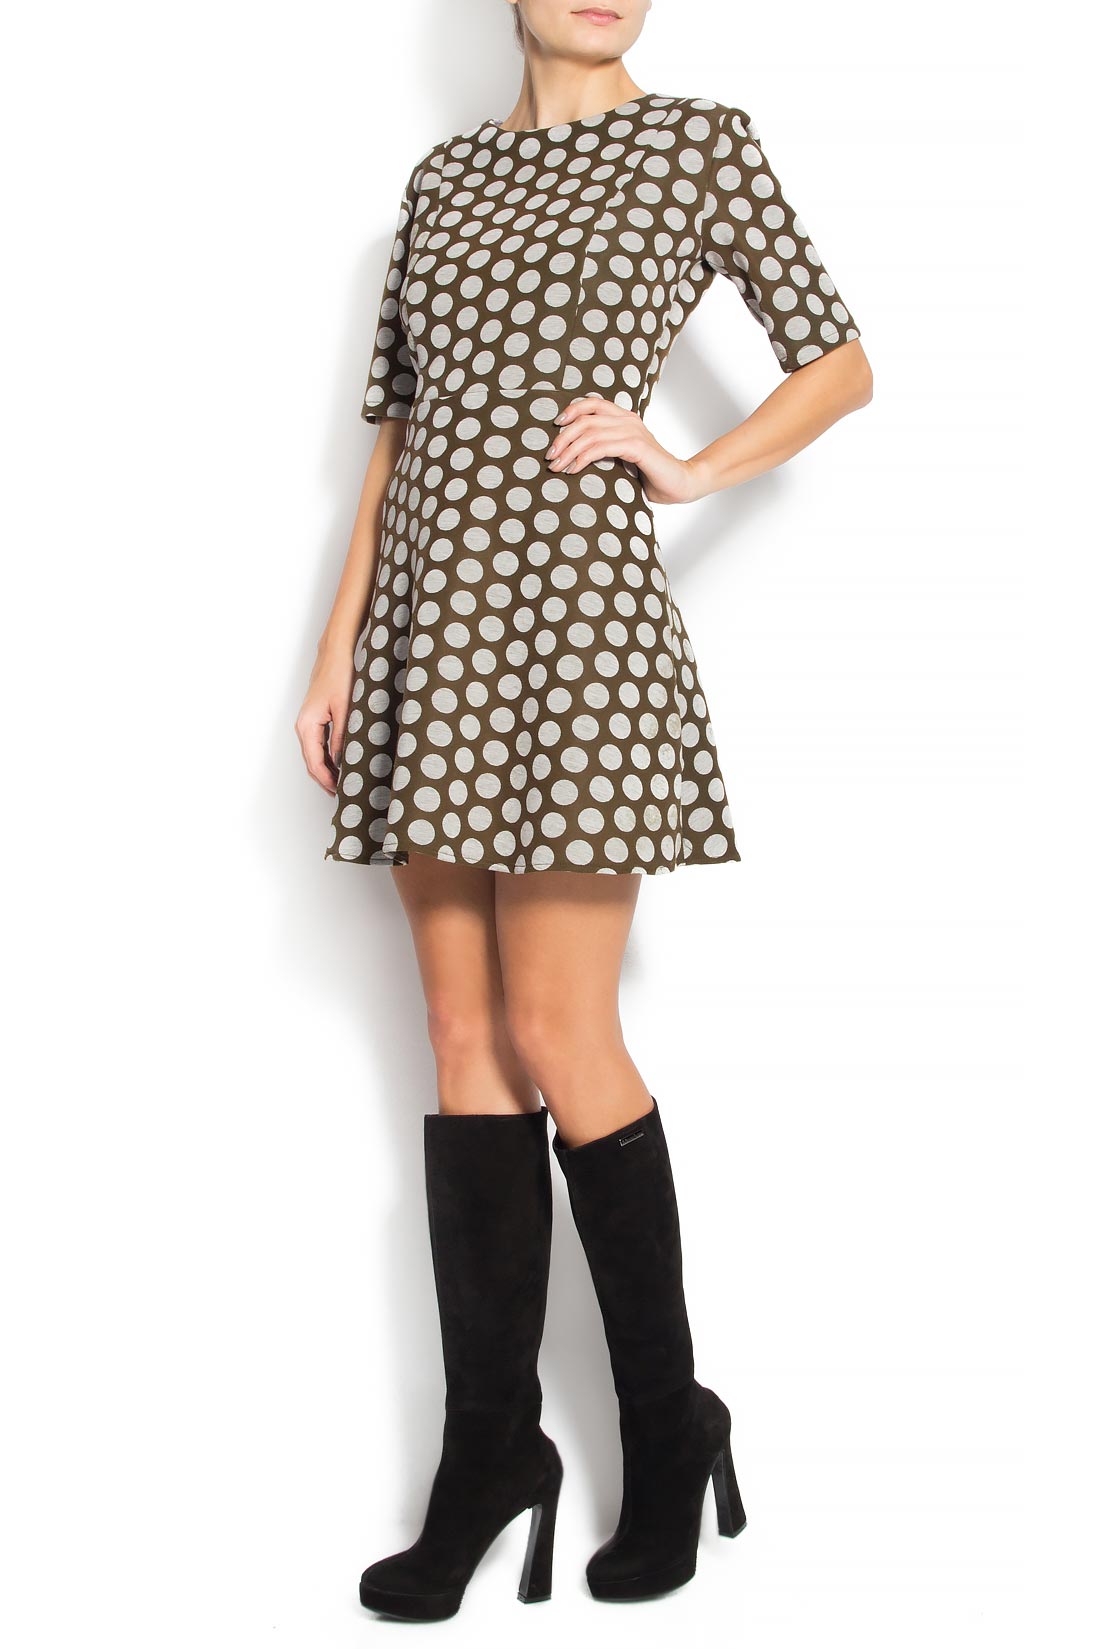 Polka-dot crepe mini dress Bluzat image 1